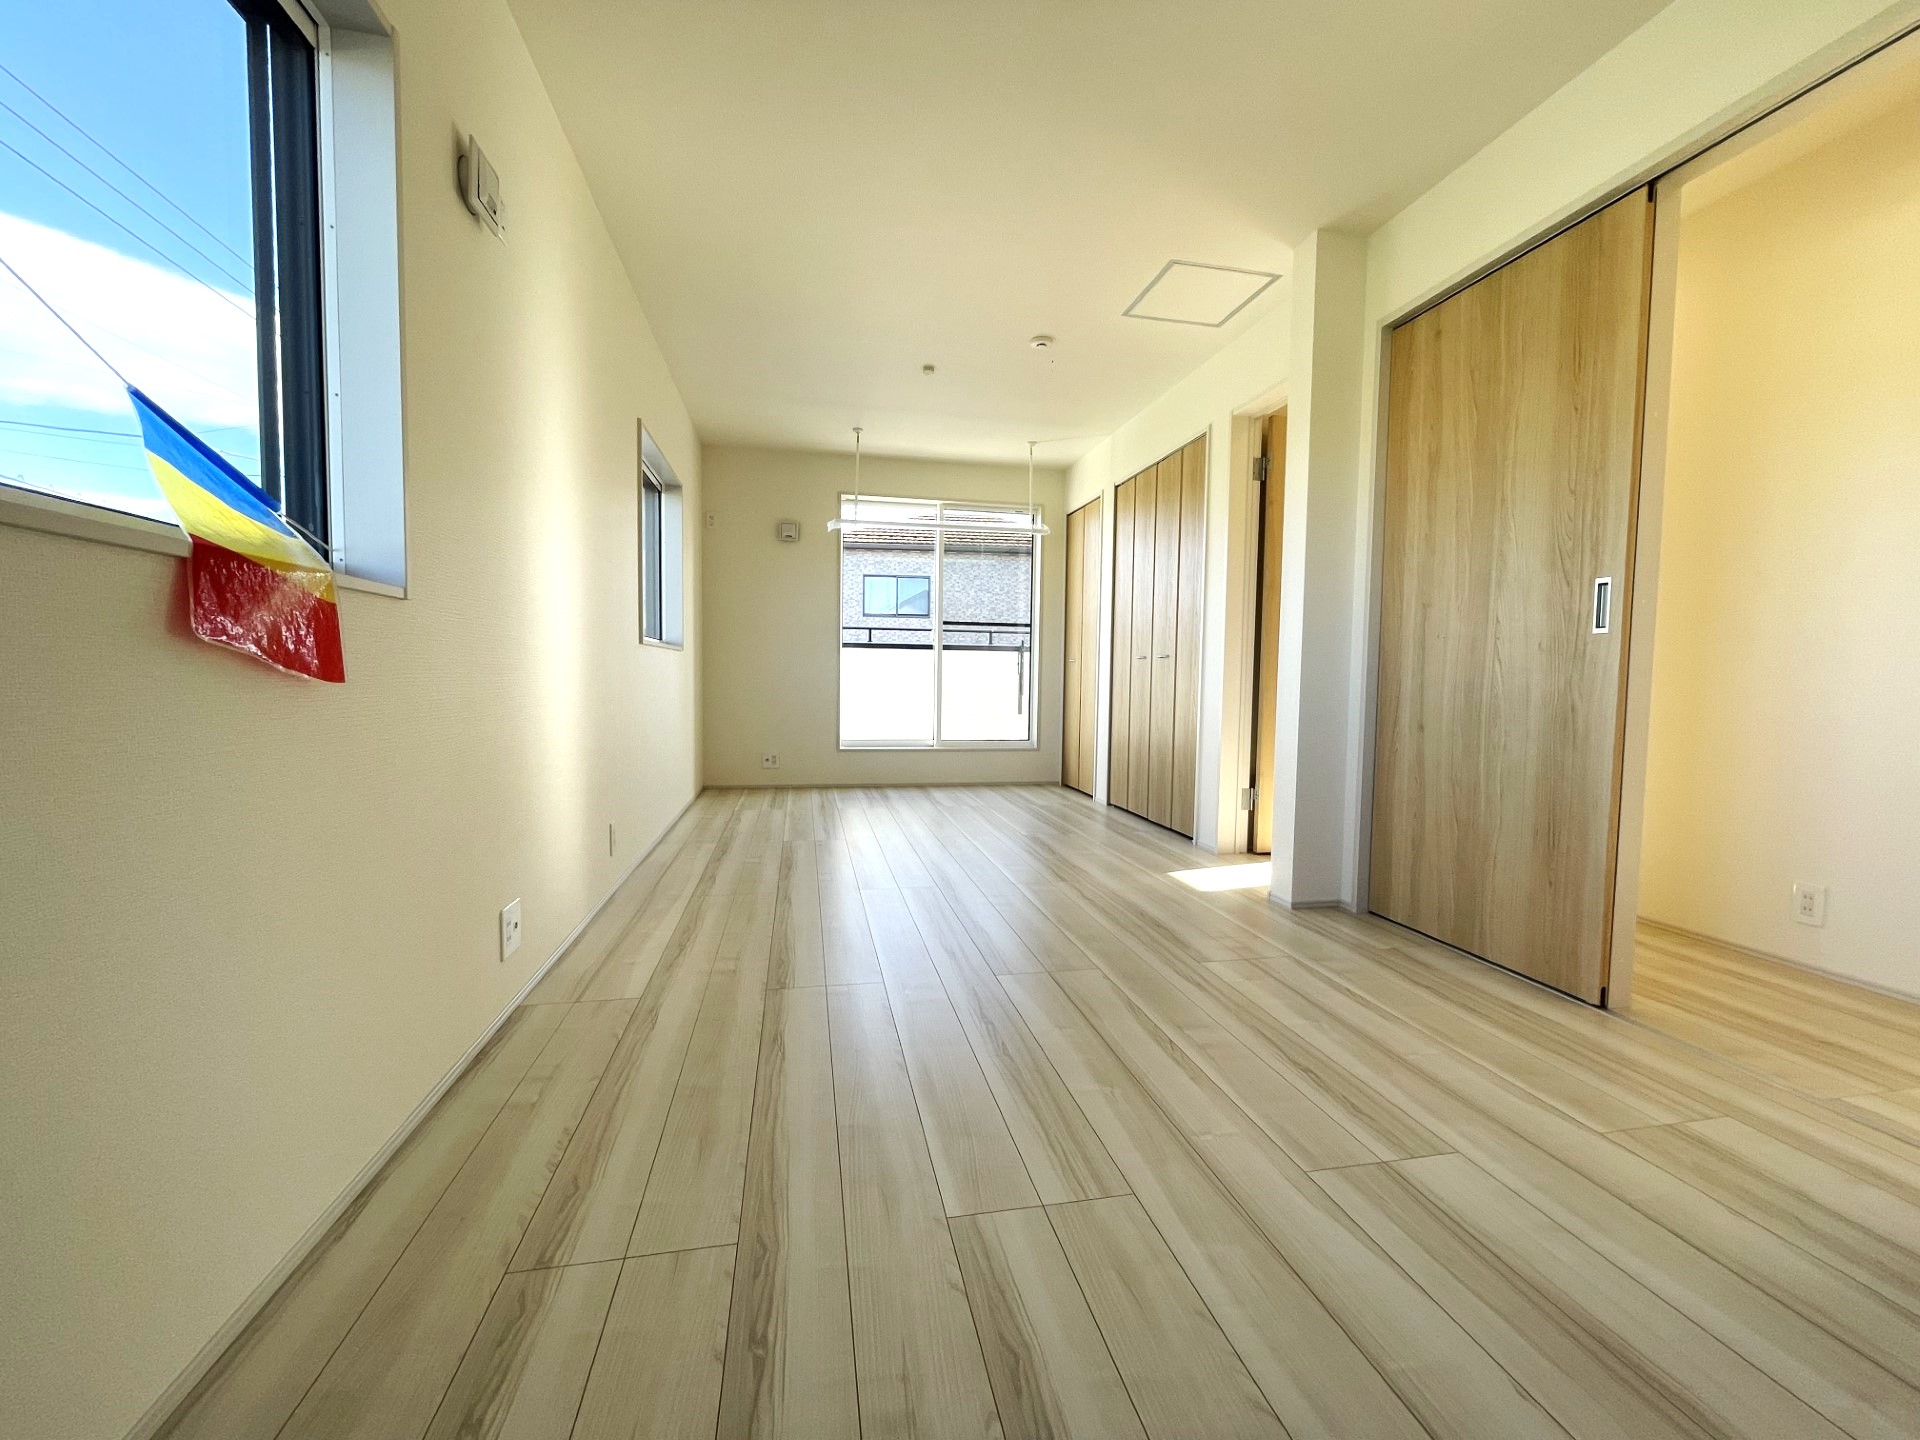 【2号棟主寝室10.5帖】　3面採光で白の木目の明るい室内。収納×2・室内物干し付き。家族構成に合わせて部屋を分割可能な可変型プラン採用!※壁の設置は別途有料になります